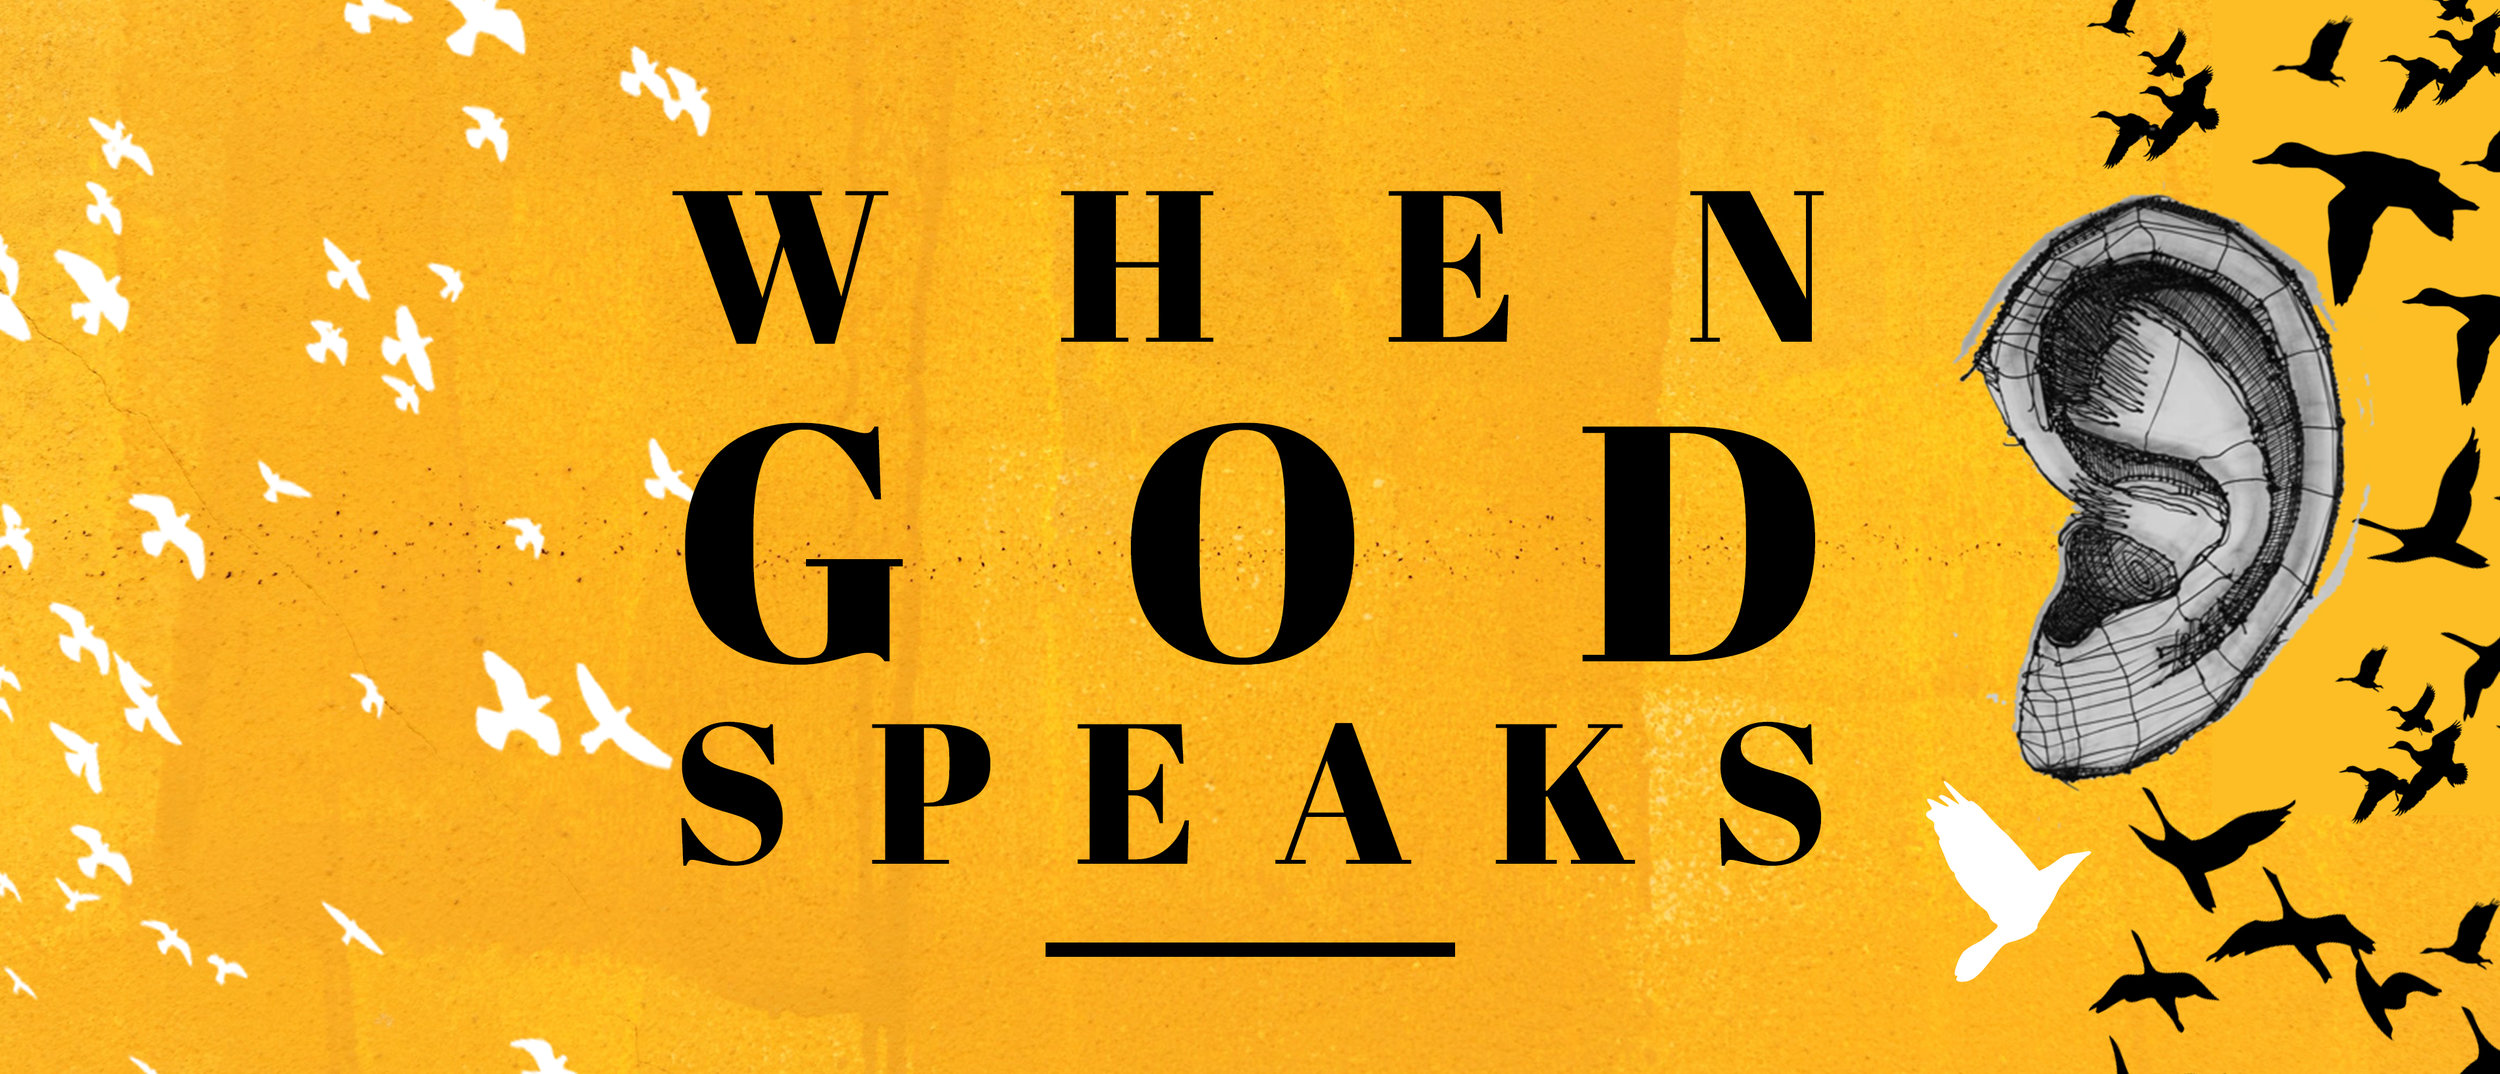 When God Speaks 1.jpg